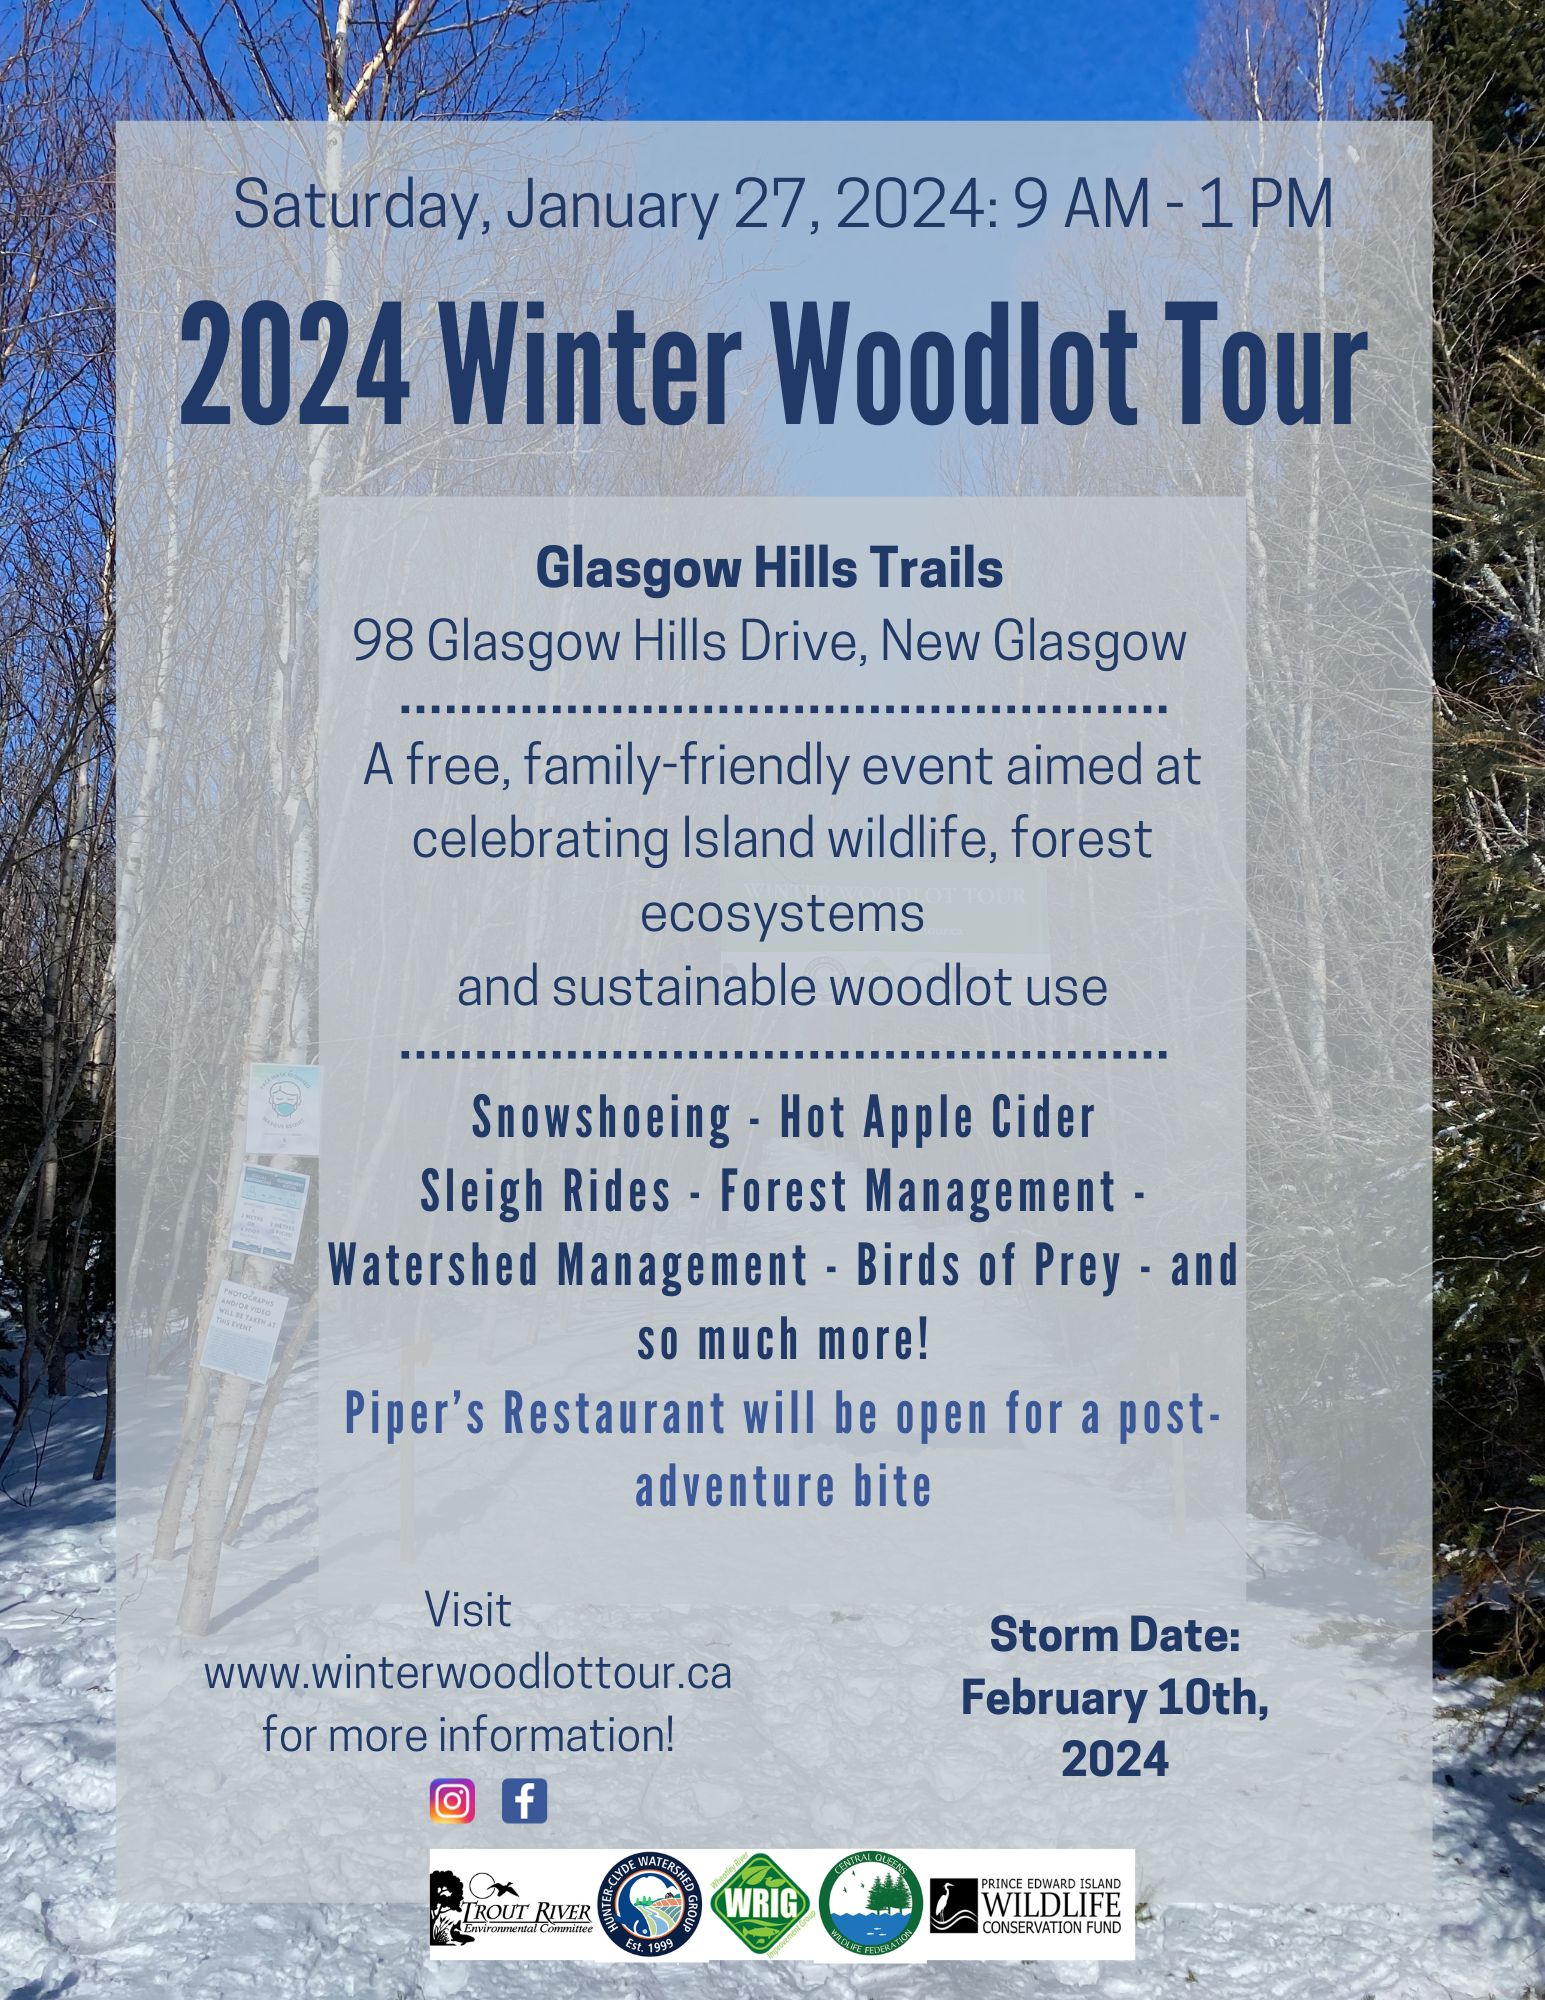 Winter Woodlot Tour 2024 @ Glasgow Hills Trails